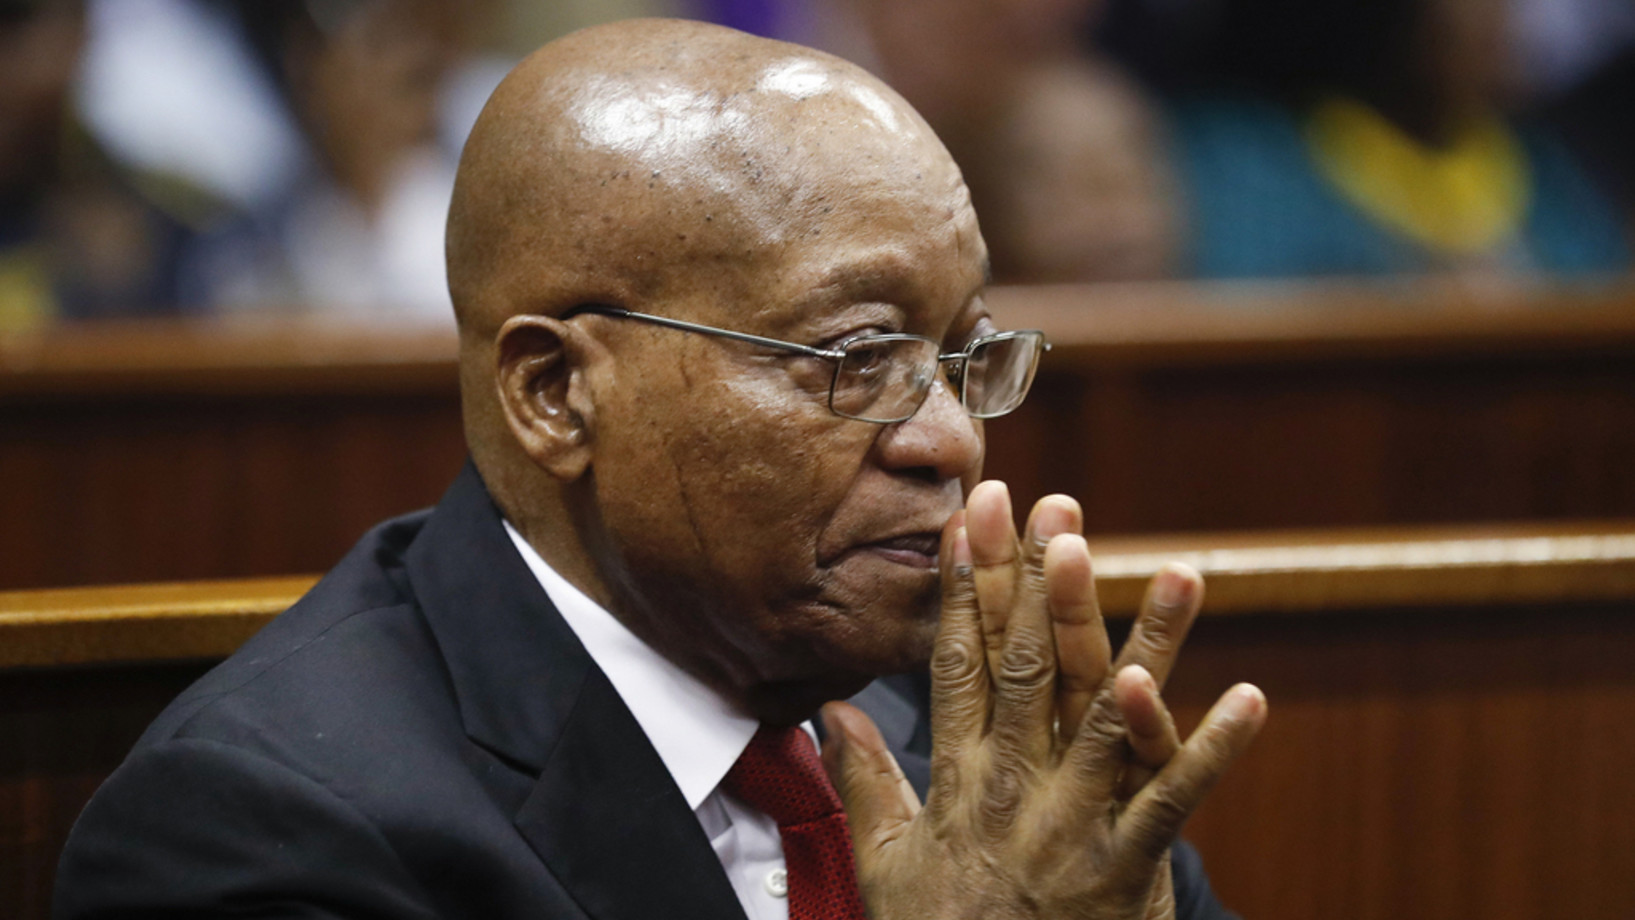 Der südafrikanische Ex-Präsident Jacob Zuma steht in Durban vor Gericht wegen Betrugs, Korruption und organisierter Kriminalität. (Keystone/AP POOL EPA, Nic Bothma)
